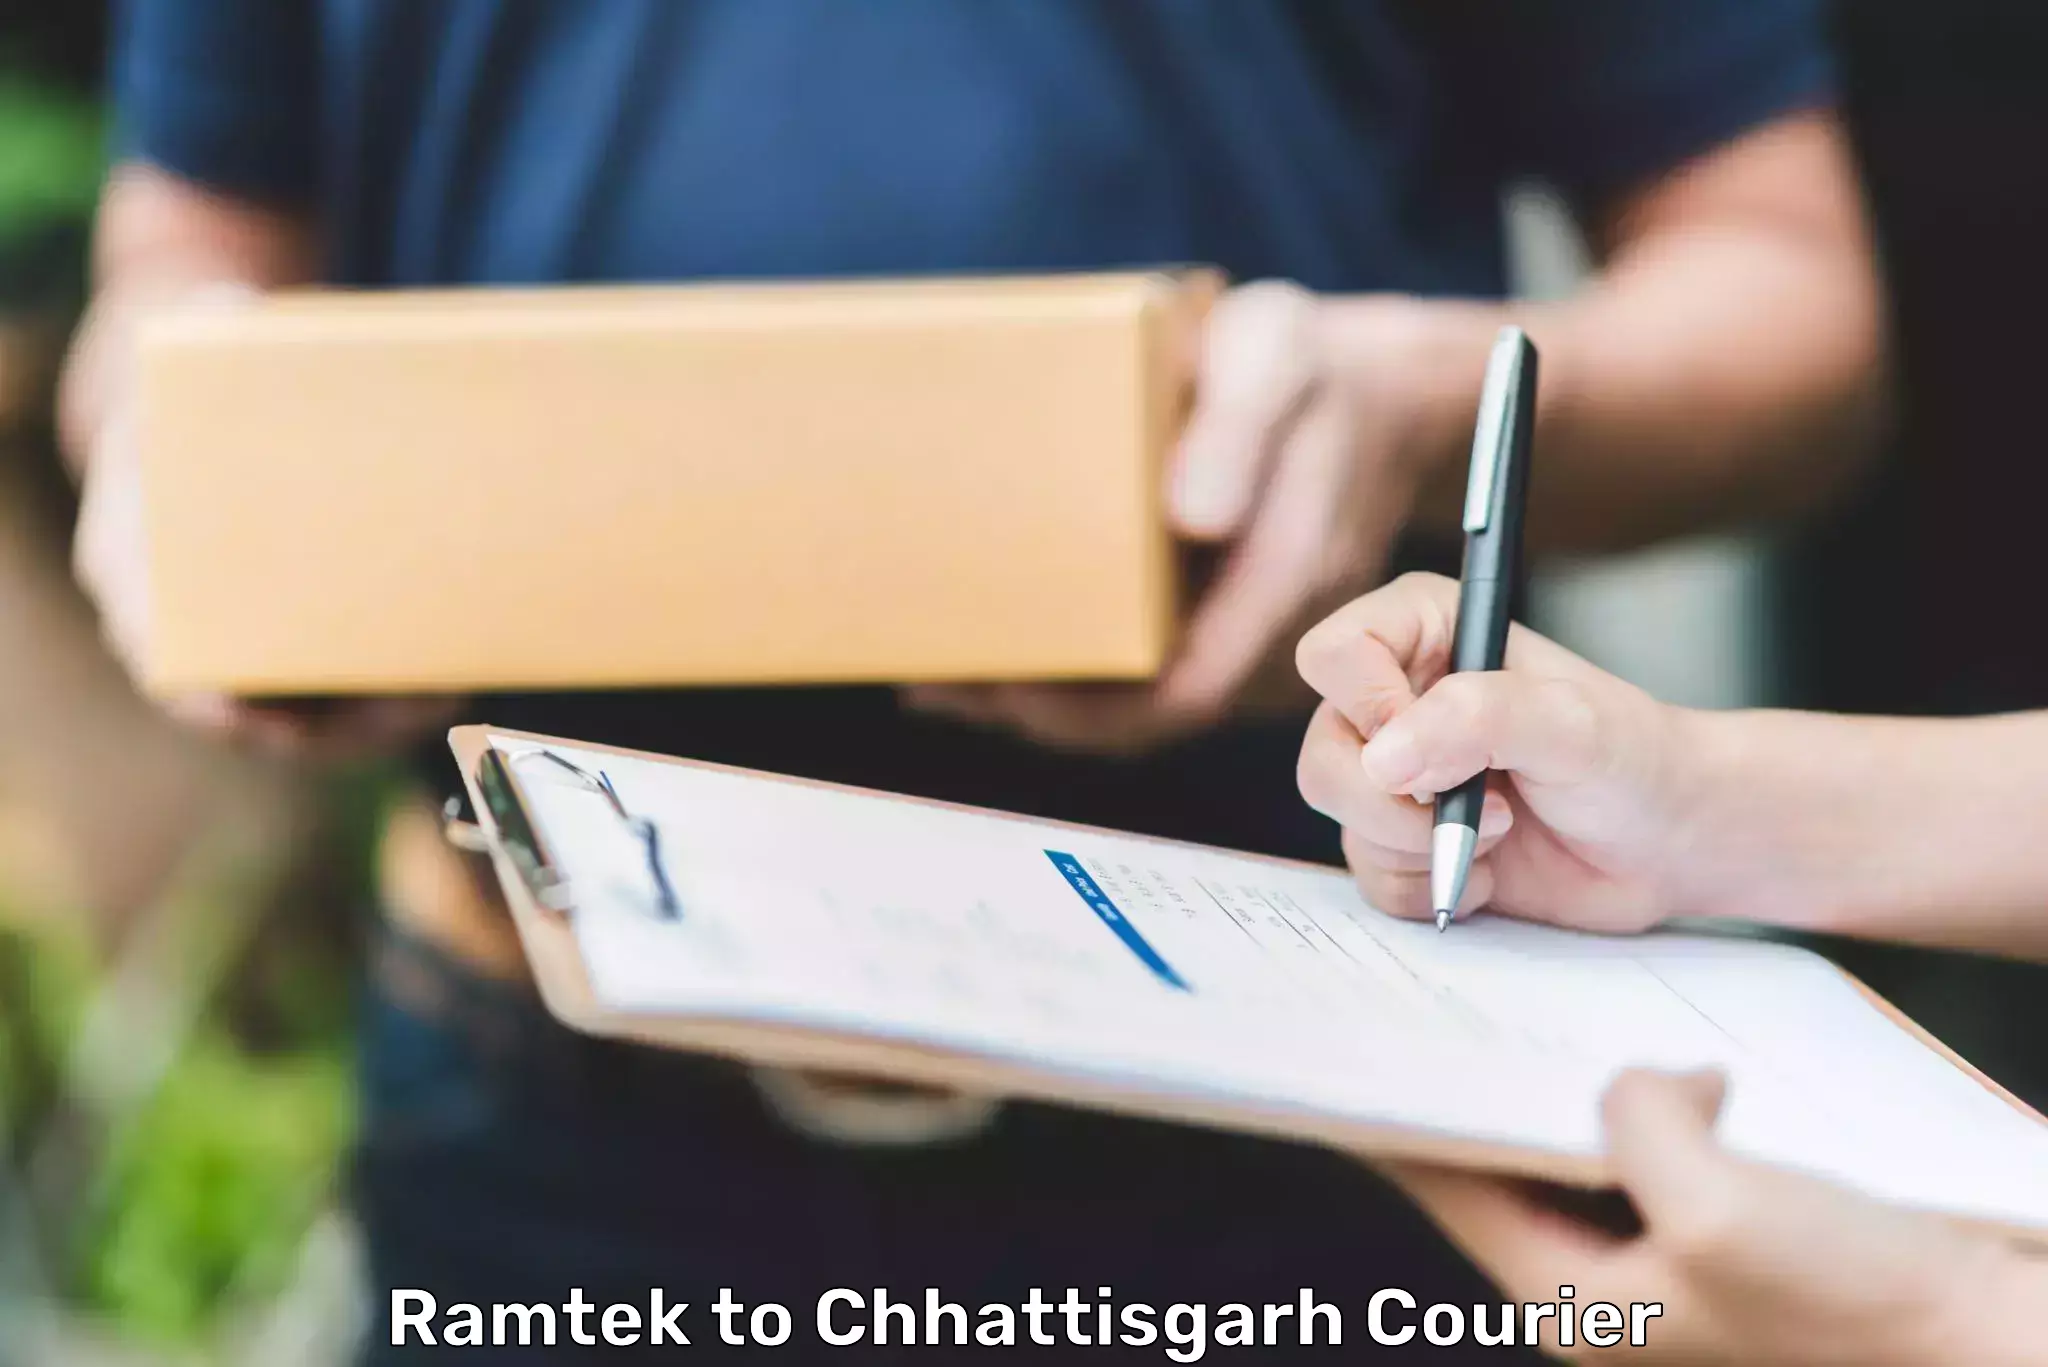 Urgent courier needs in Ramtek to Chhattisgarh